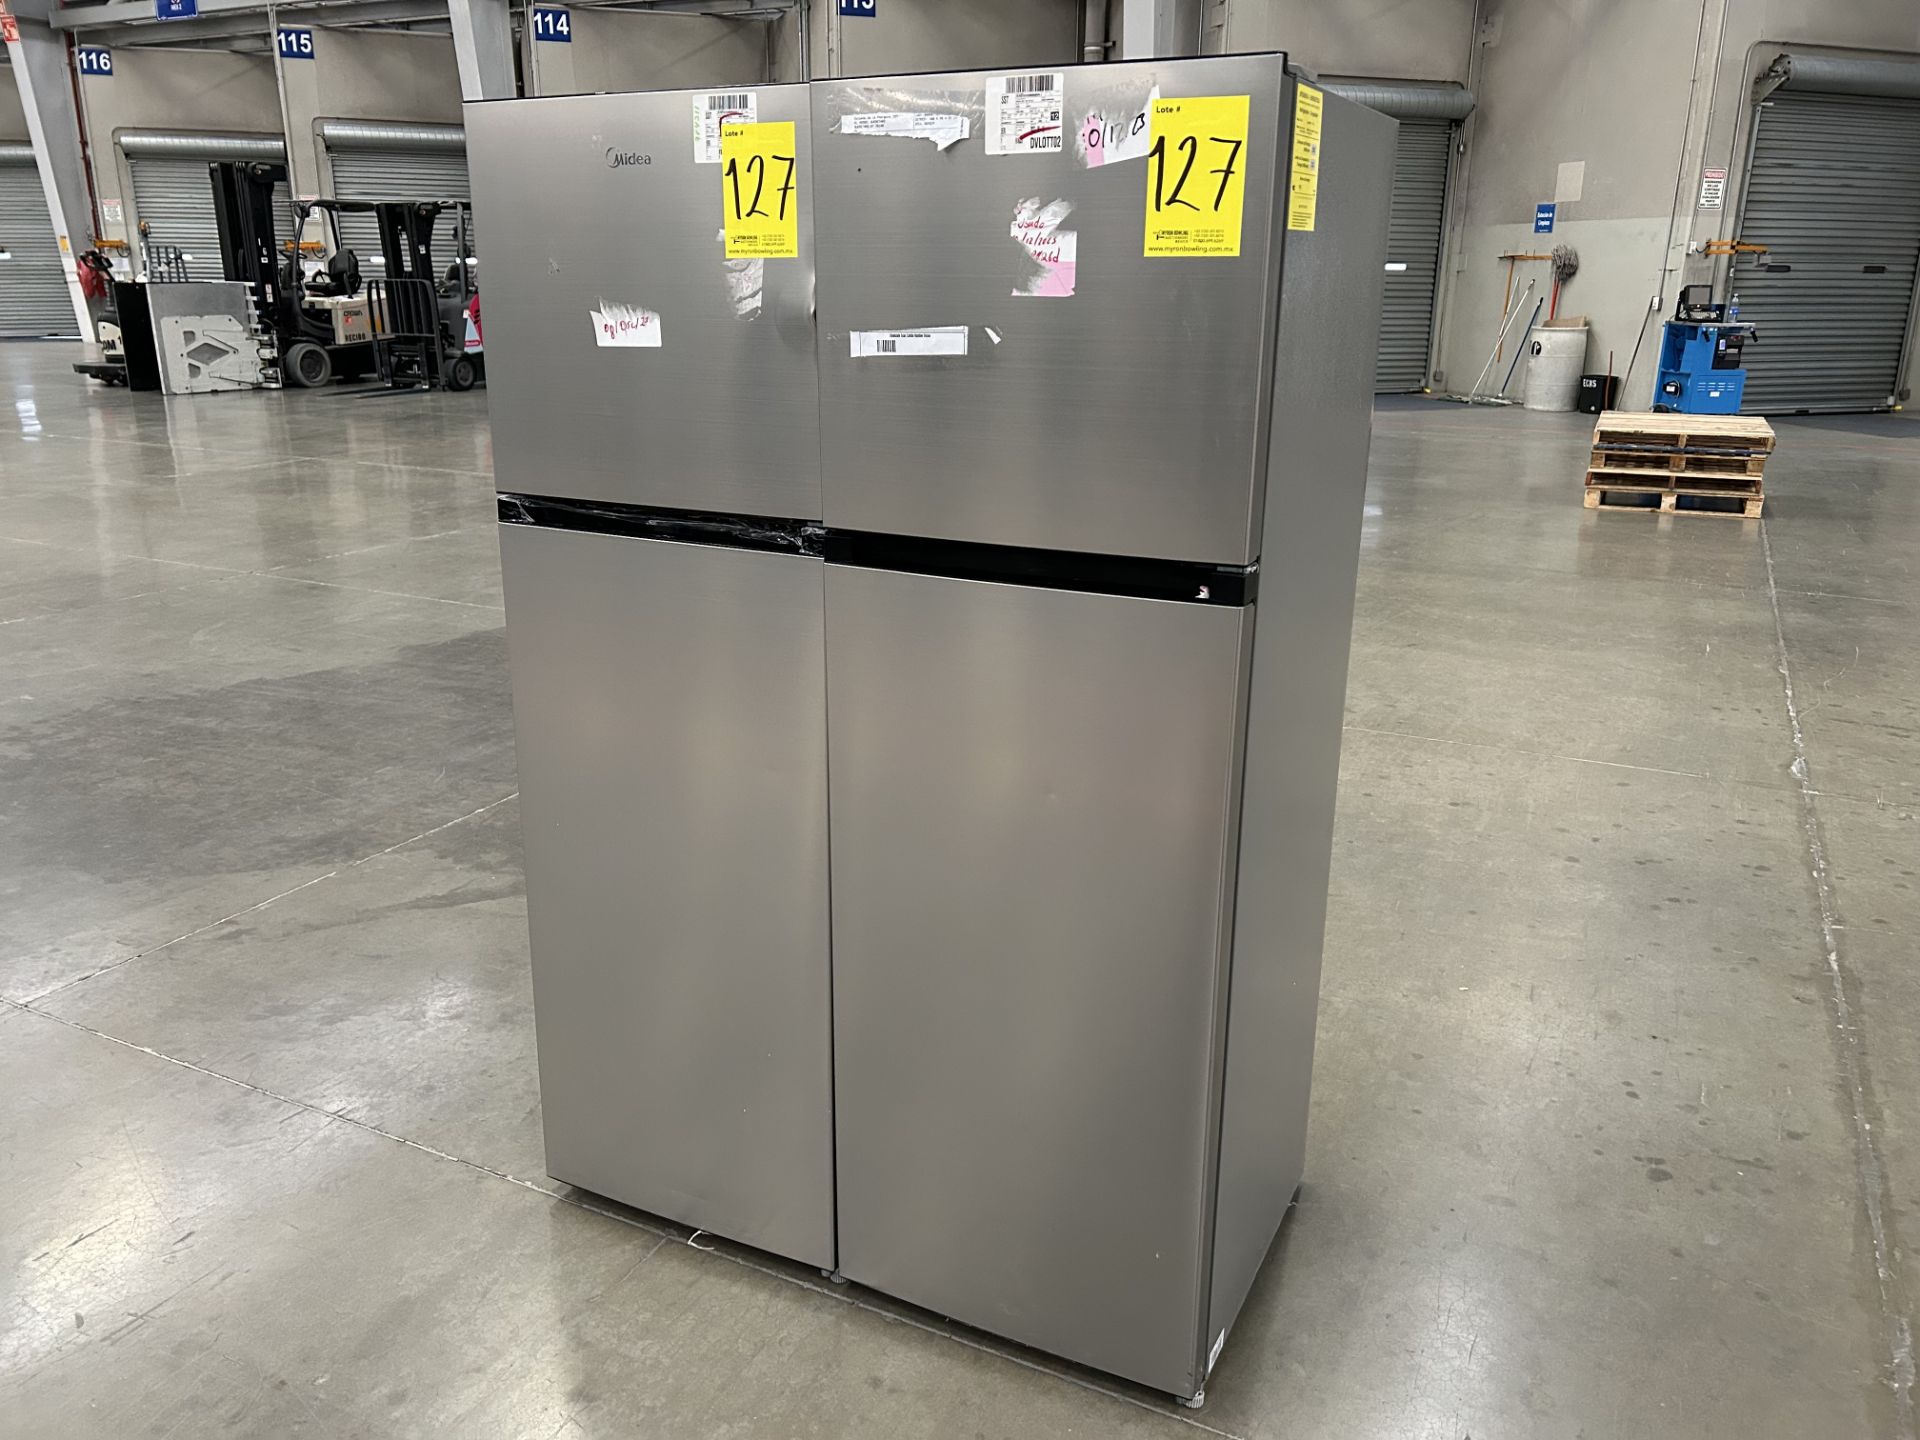 Lote de 2 refrigeradores contiene: 1 refrigerador Marca MIDEA, Modelo MDRT280WINDX, Serie 11872, Co - Image 3 of 6